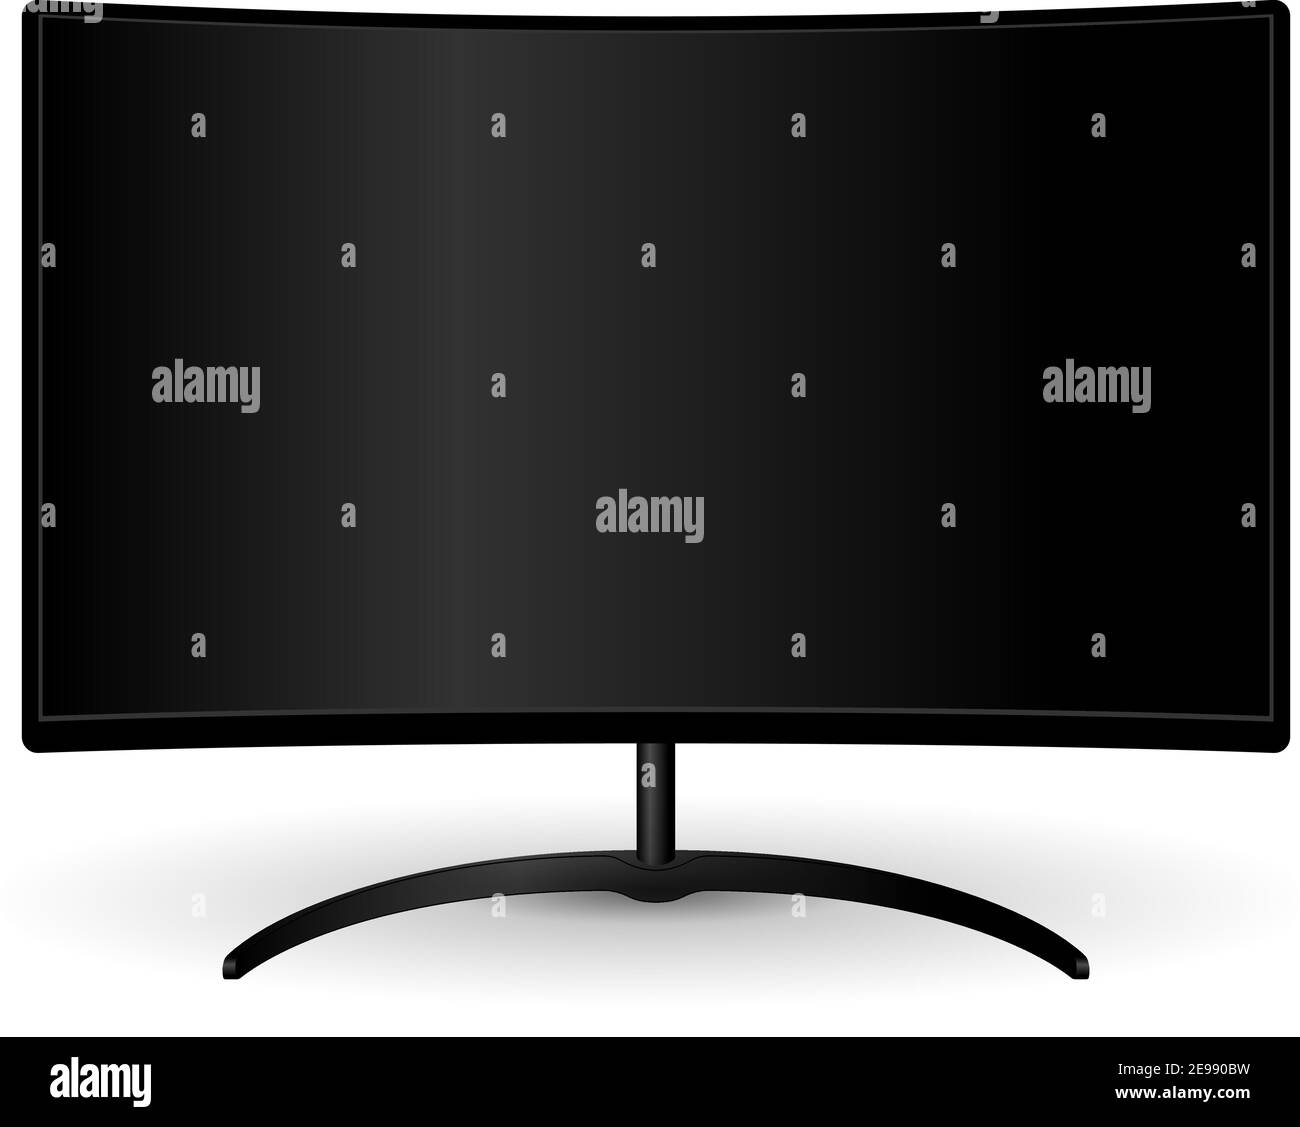 Schwarzer Full hd-fernseher mit geschwungenem Breitbild. Elektronisches LED-Anzeigegerät für die Web-Präsentation. HQ Vektorgrafik für Werbung. Blan Stock Vektor